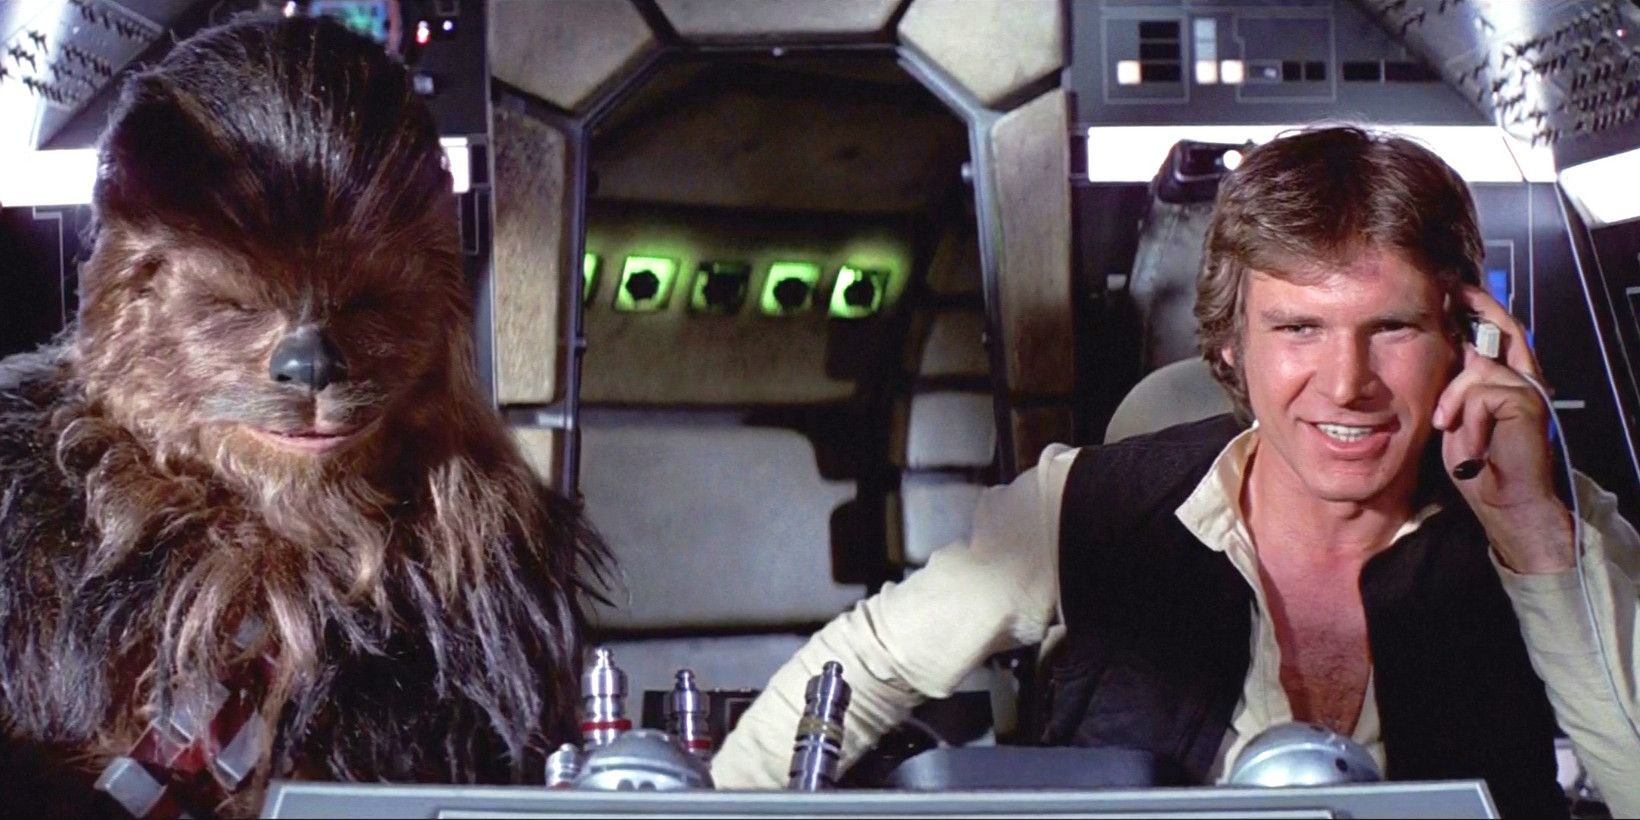 Han Solo in Star Wars